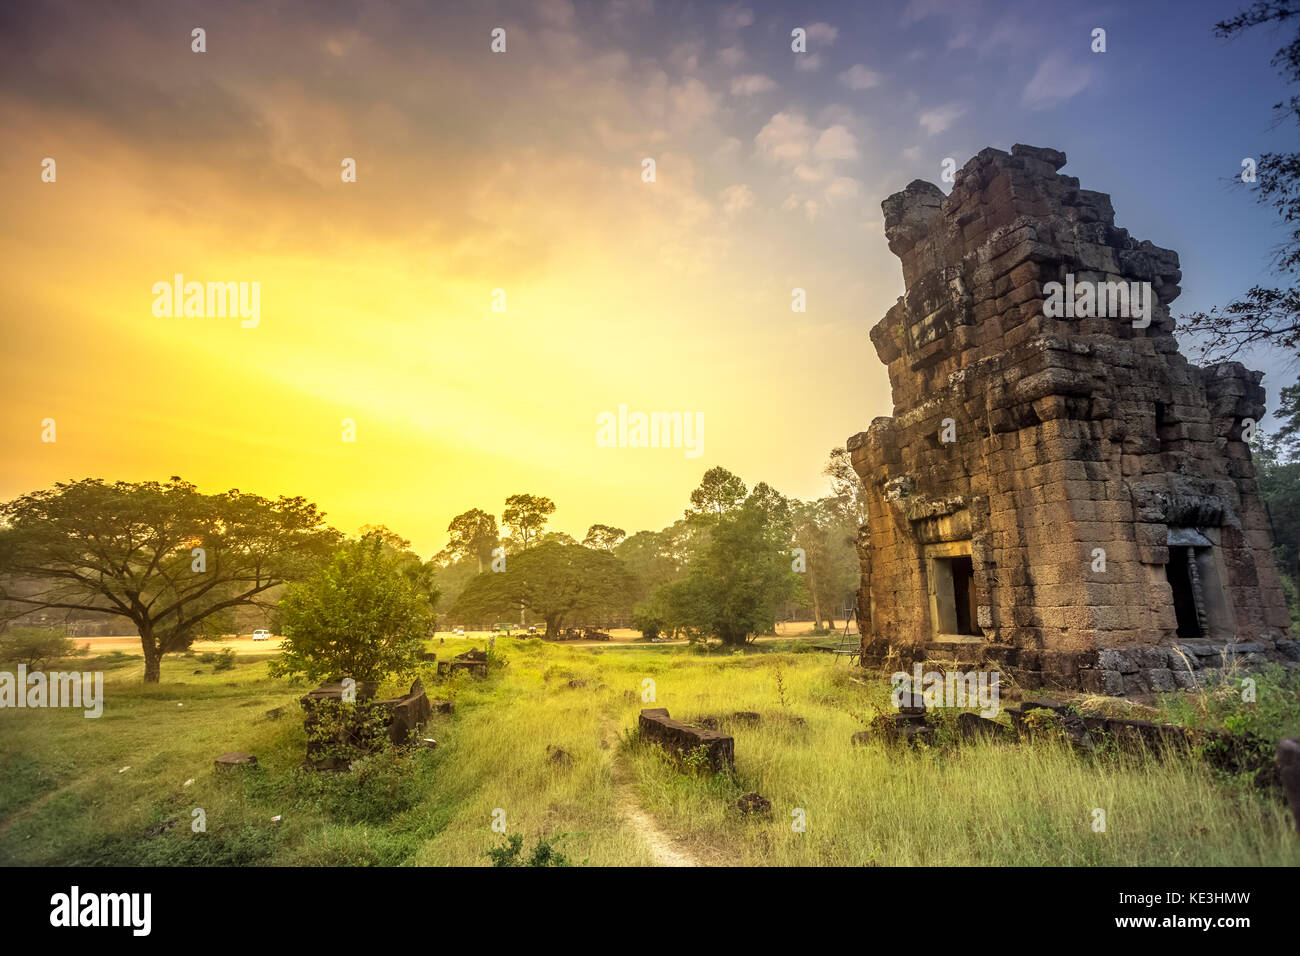 Tempel Angkor Wat in Kambodscha ist das größte religiöse Monument der Welt und ein Welterbe komplexe aufgeführt, eingeschrieben auf der UNESCO-herita Stockfoto